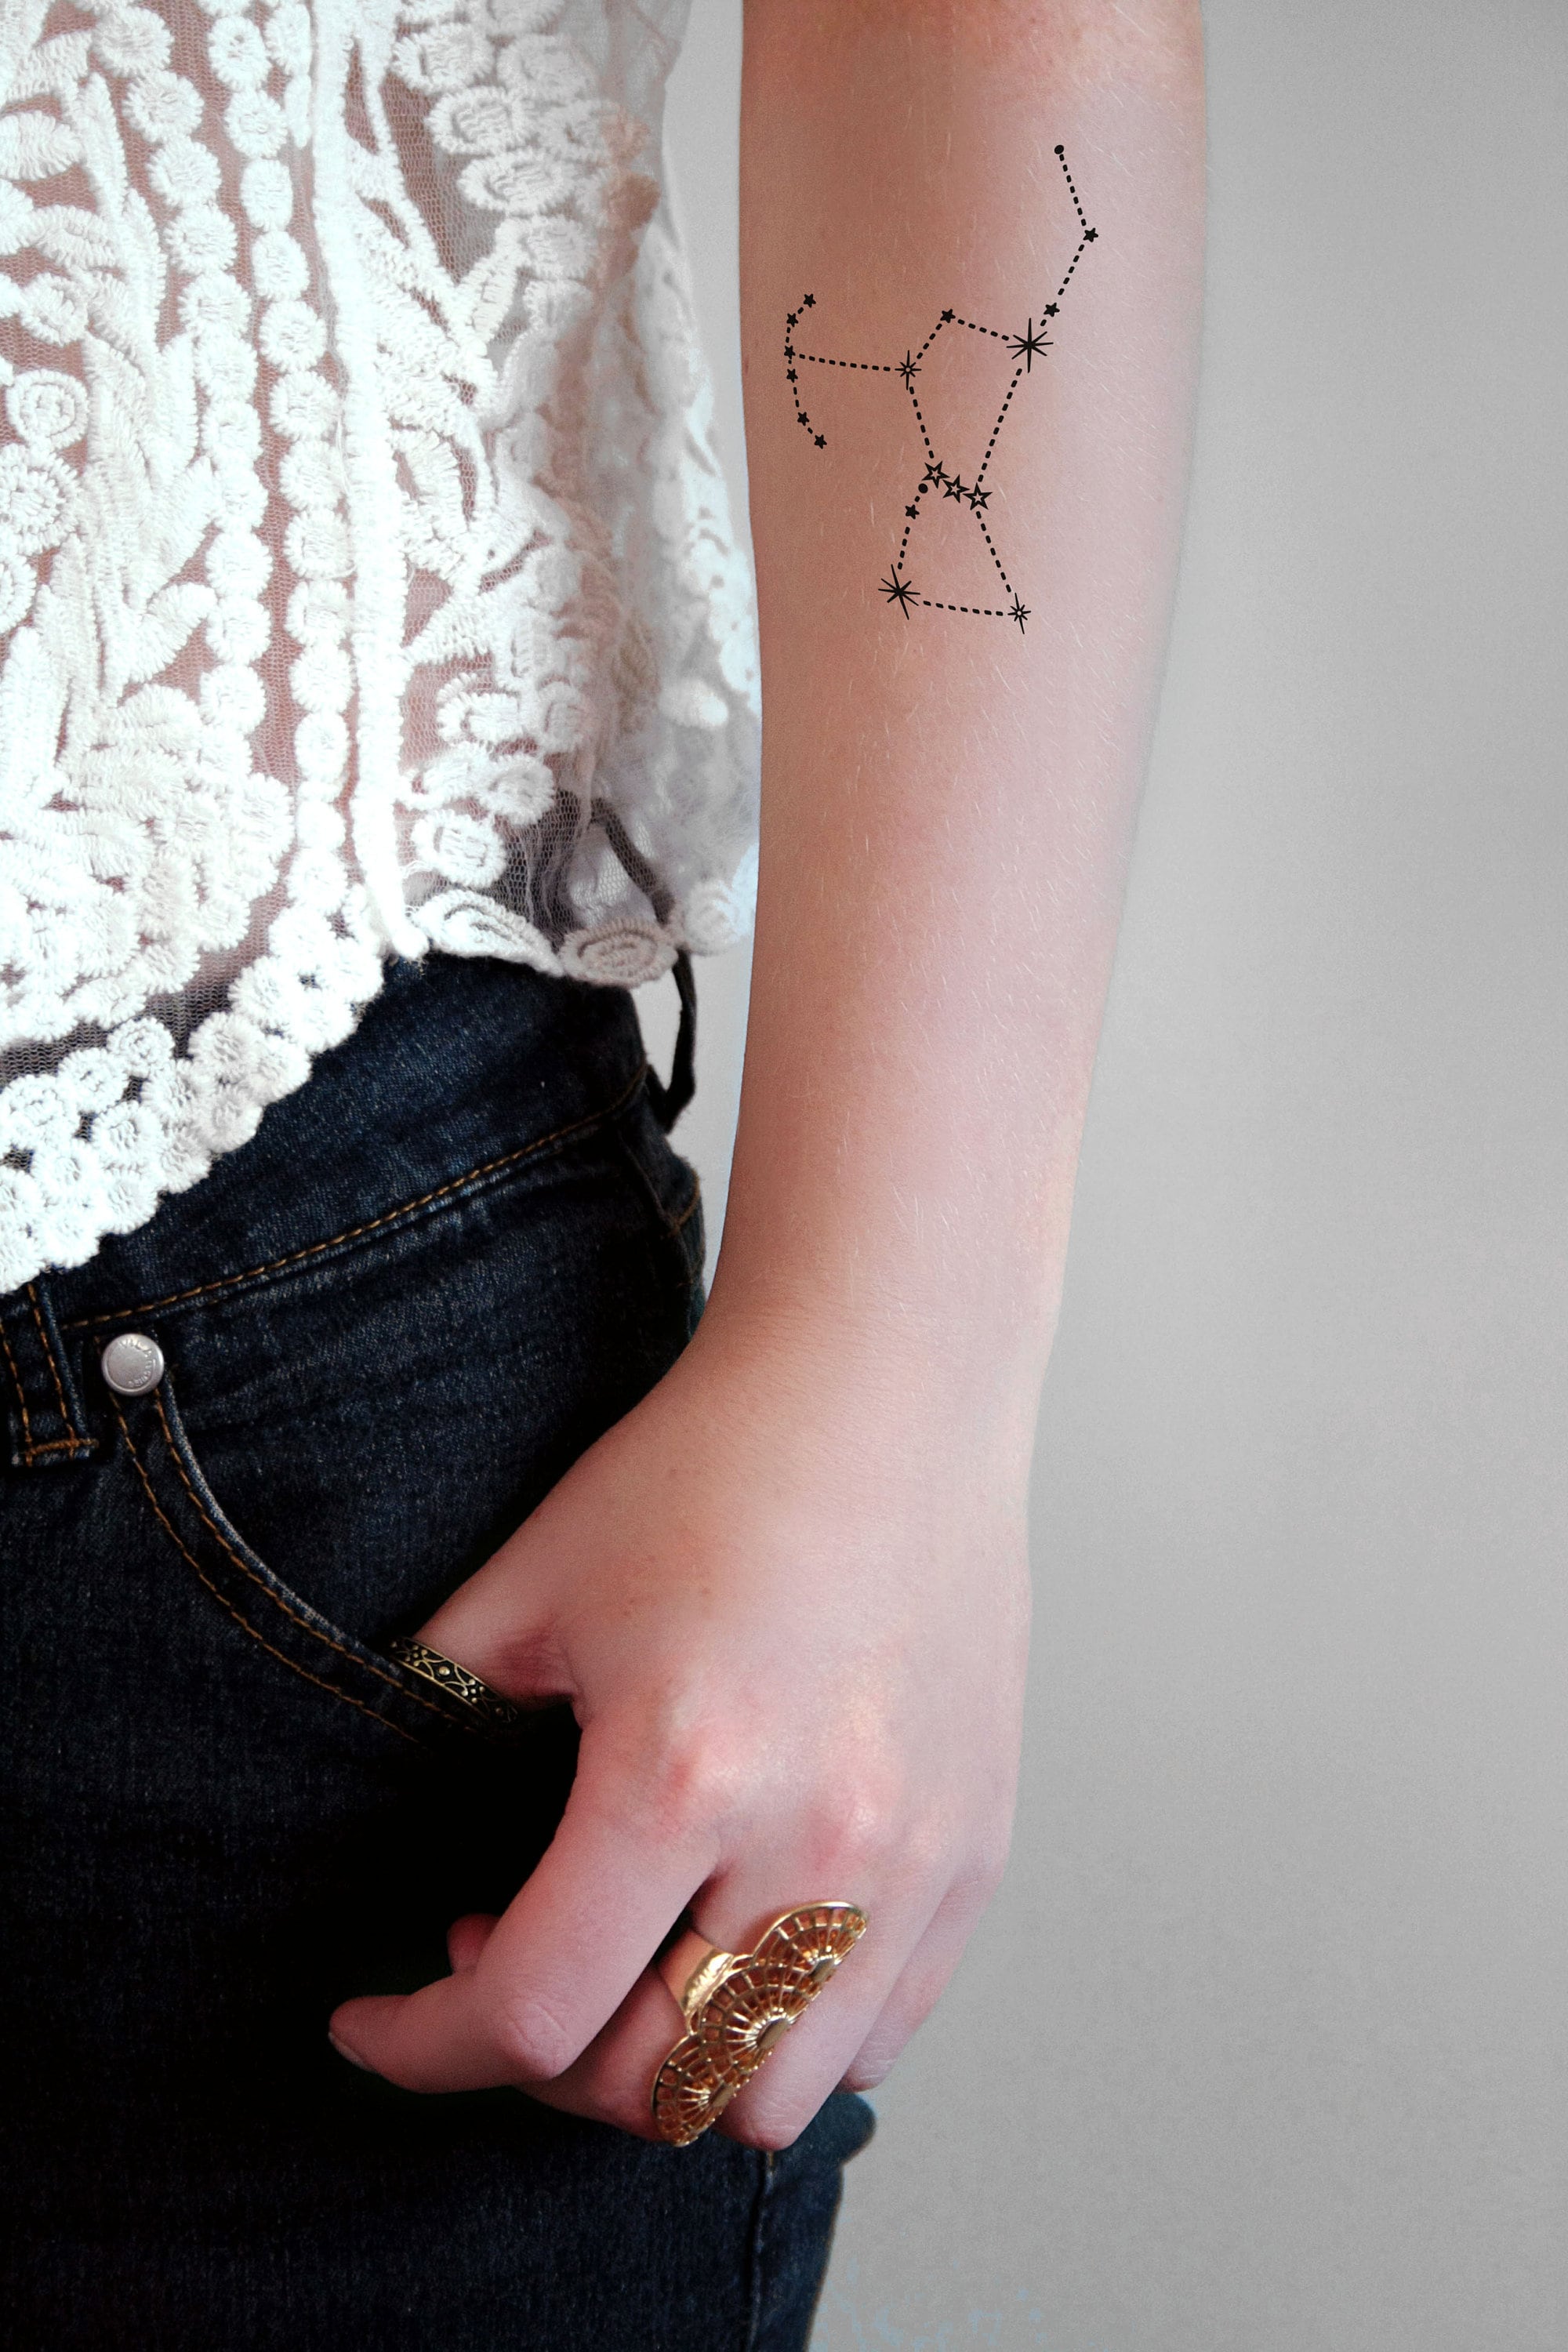 Orion Constellation tatuagen tatuagens foto compartilhado por Oby14   Português de partilha de imagens imagens